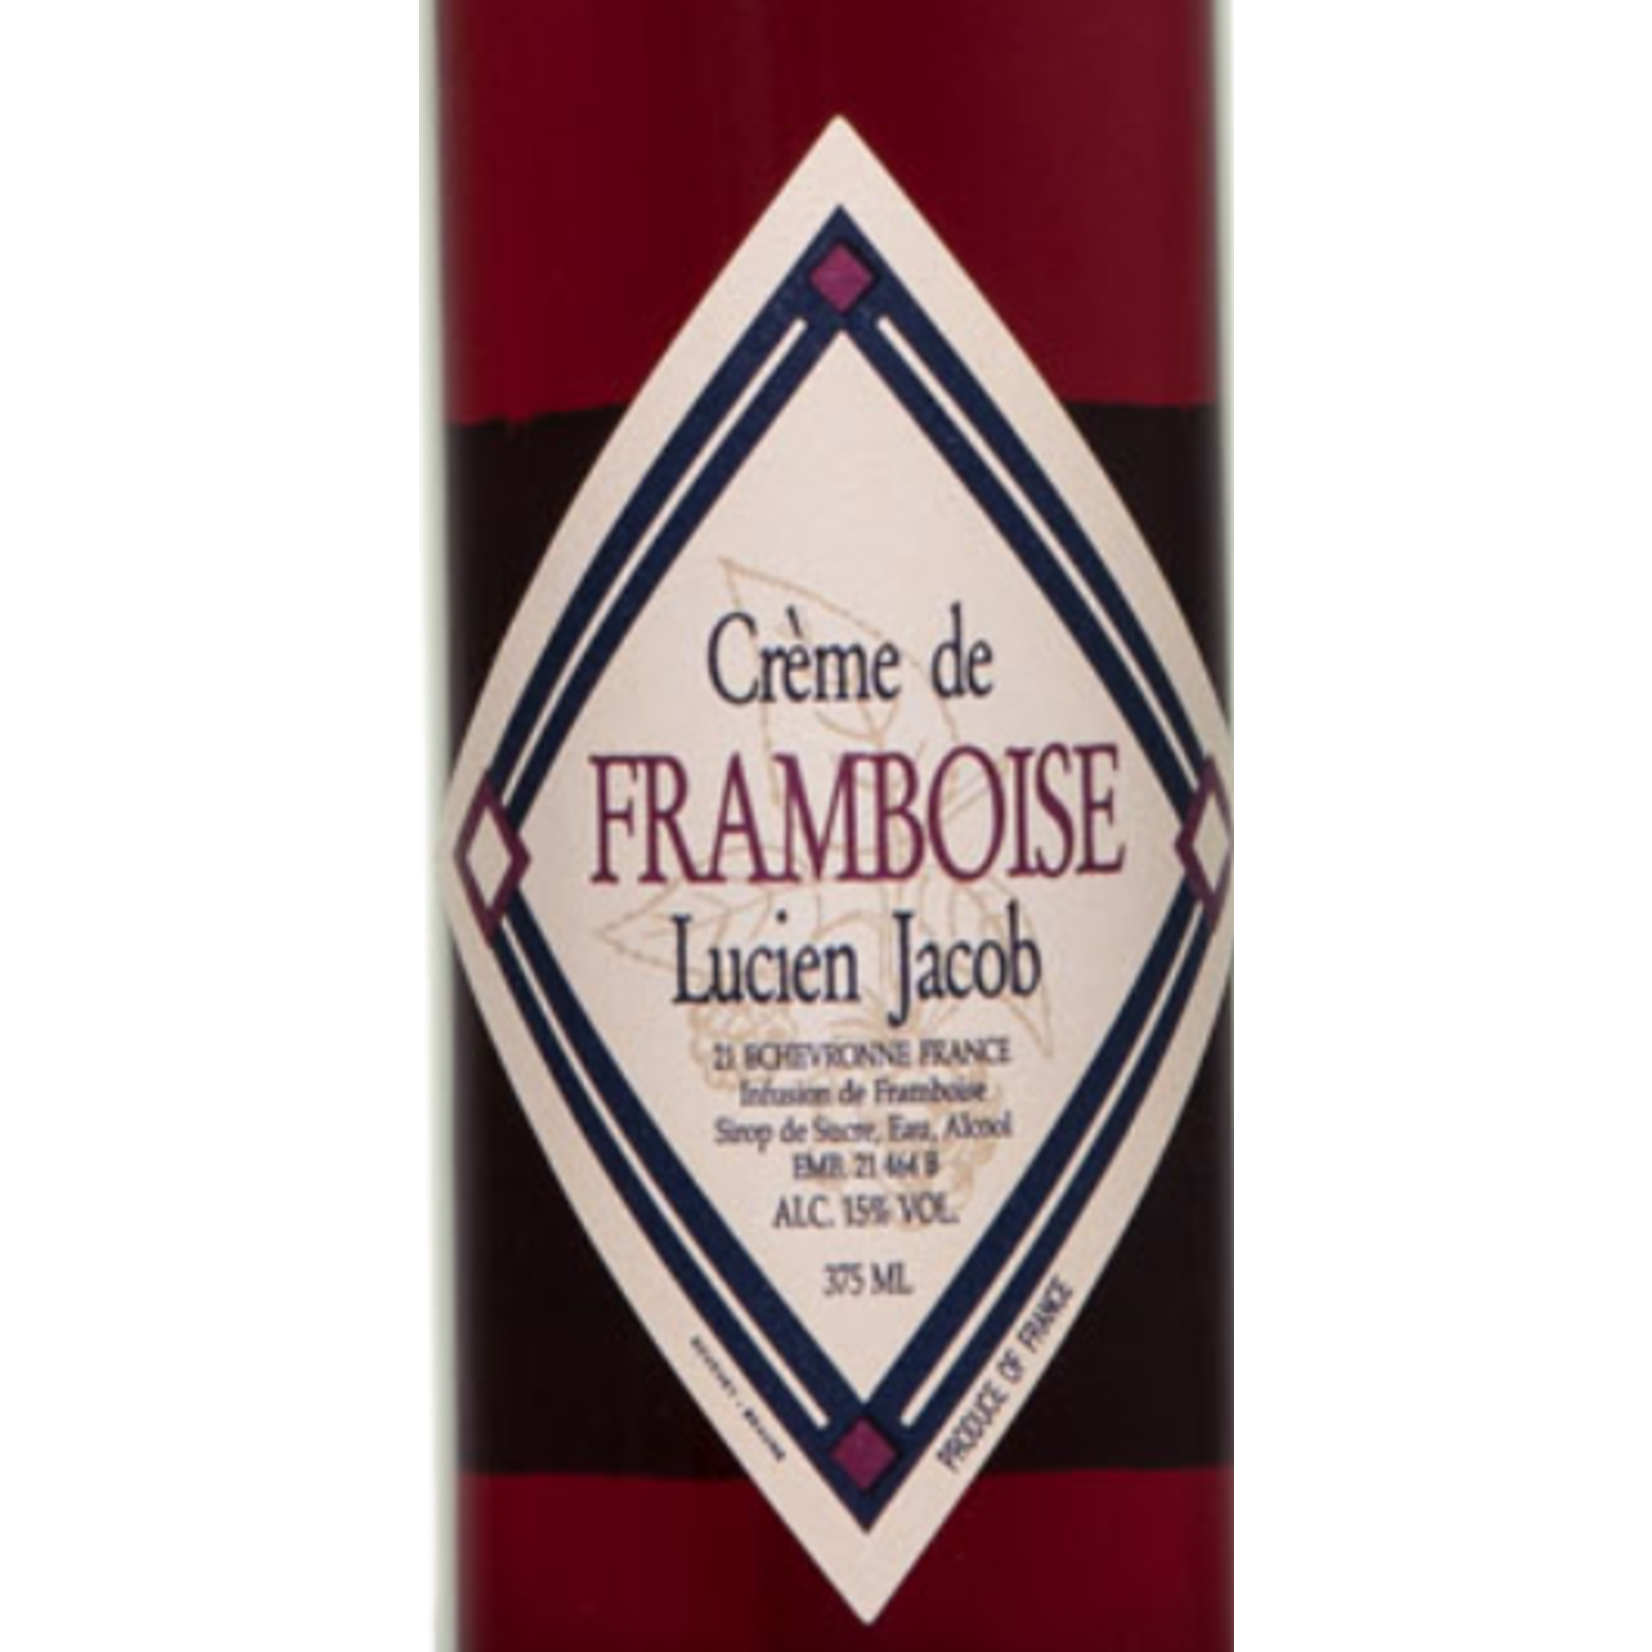 Lucien Jacob Creme de Framboise, Domaine Lucien Jacob Raspberry Liquor